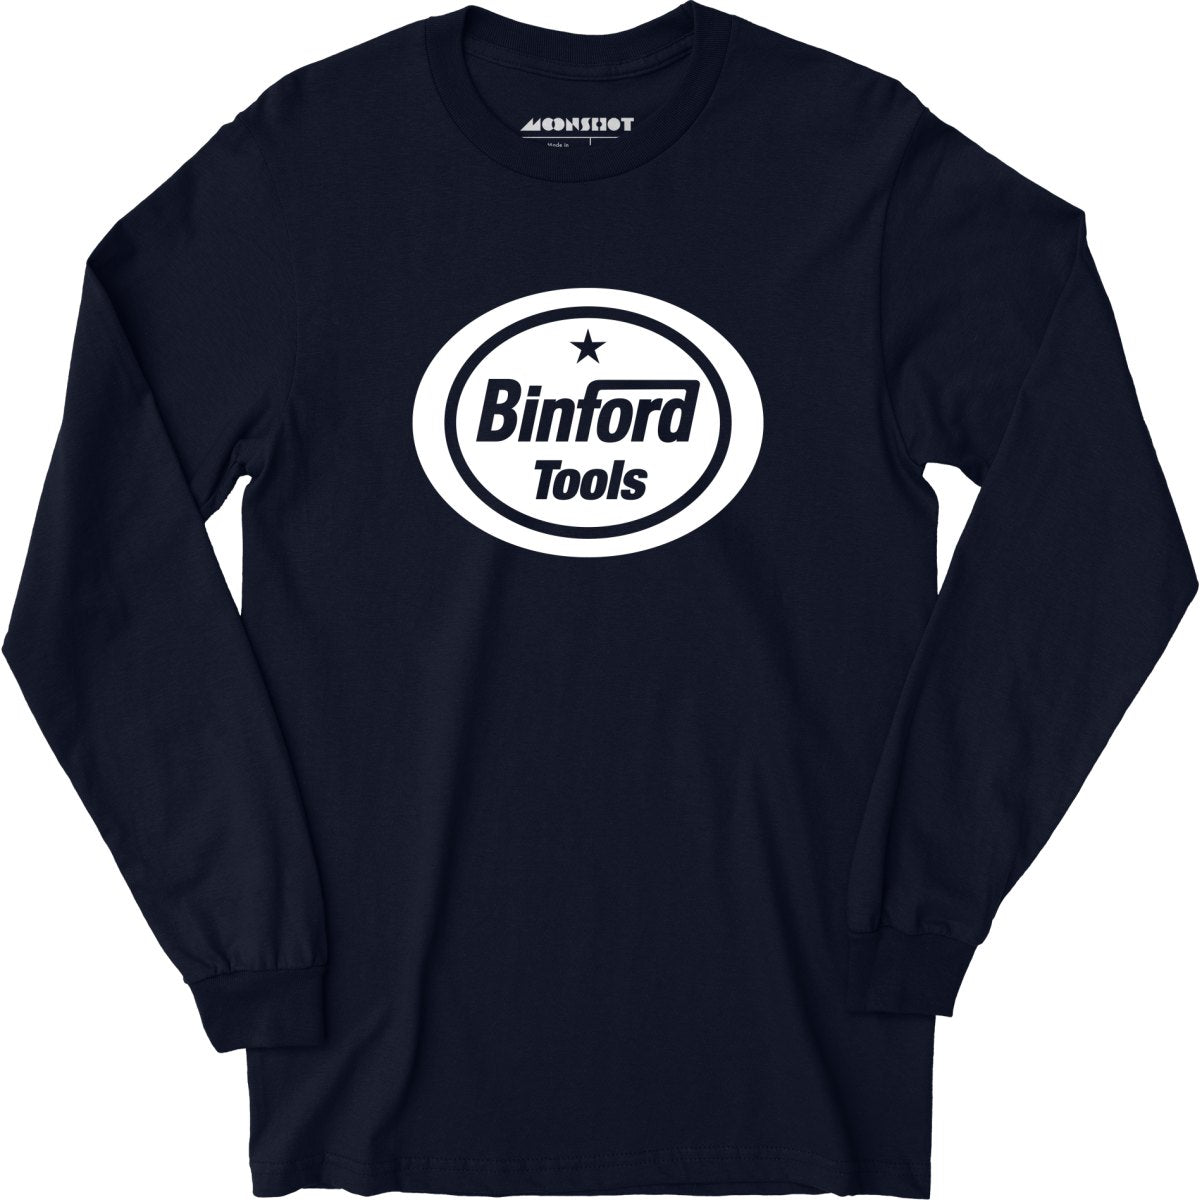 Binford Tools - Long Sleeve T-Shirt